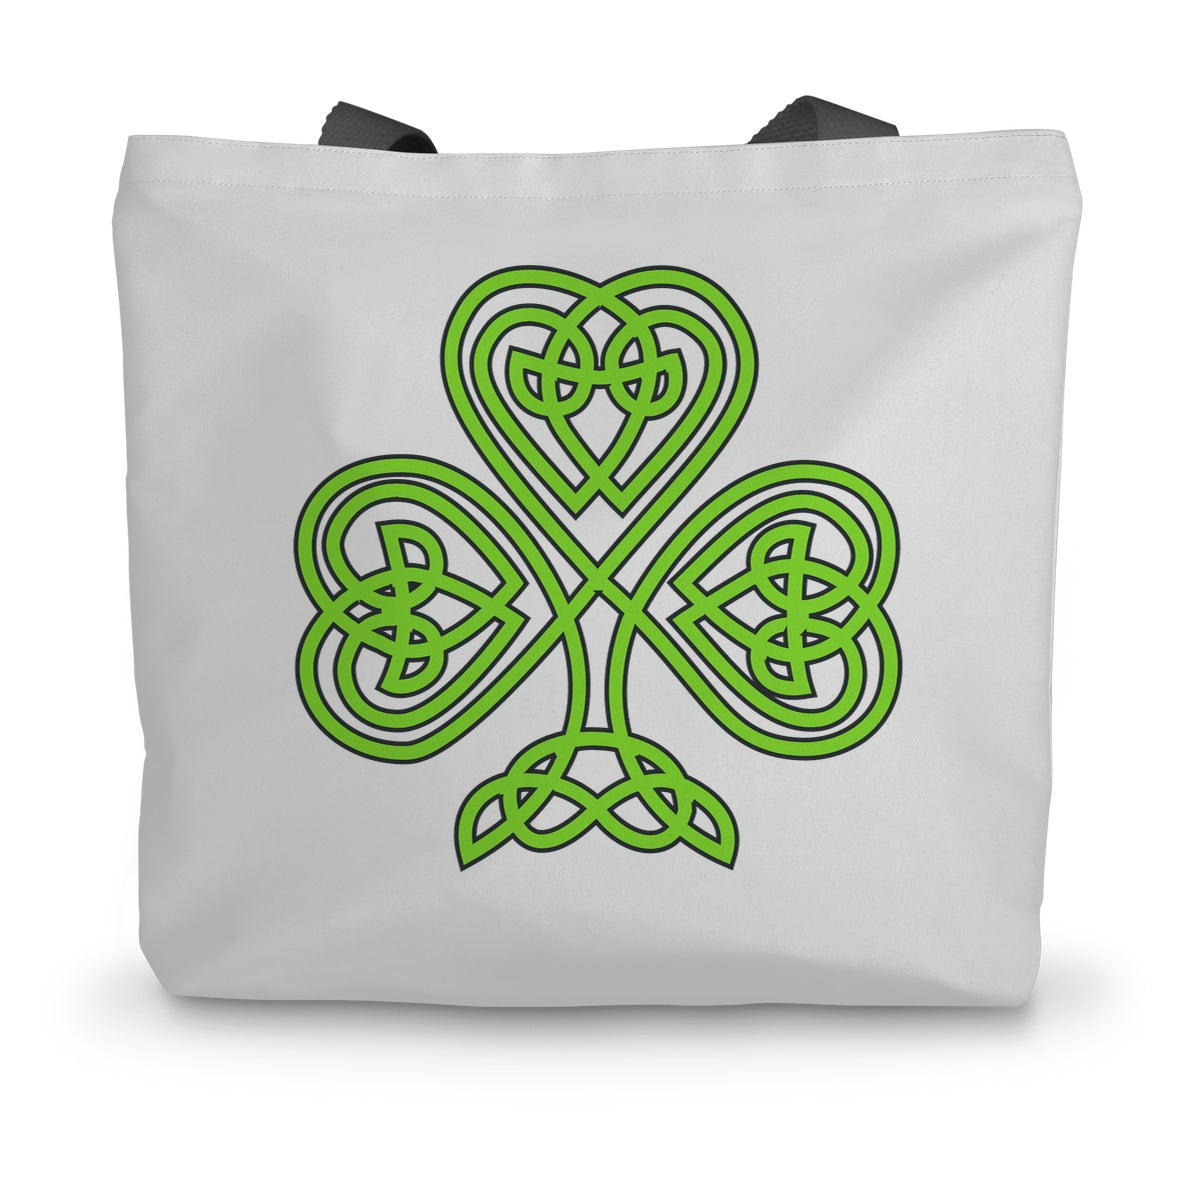 Celtic Shamrock Canvas Tote Bag